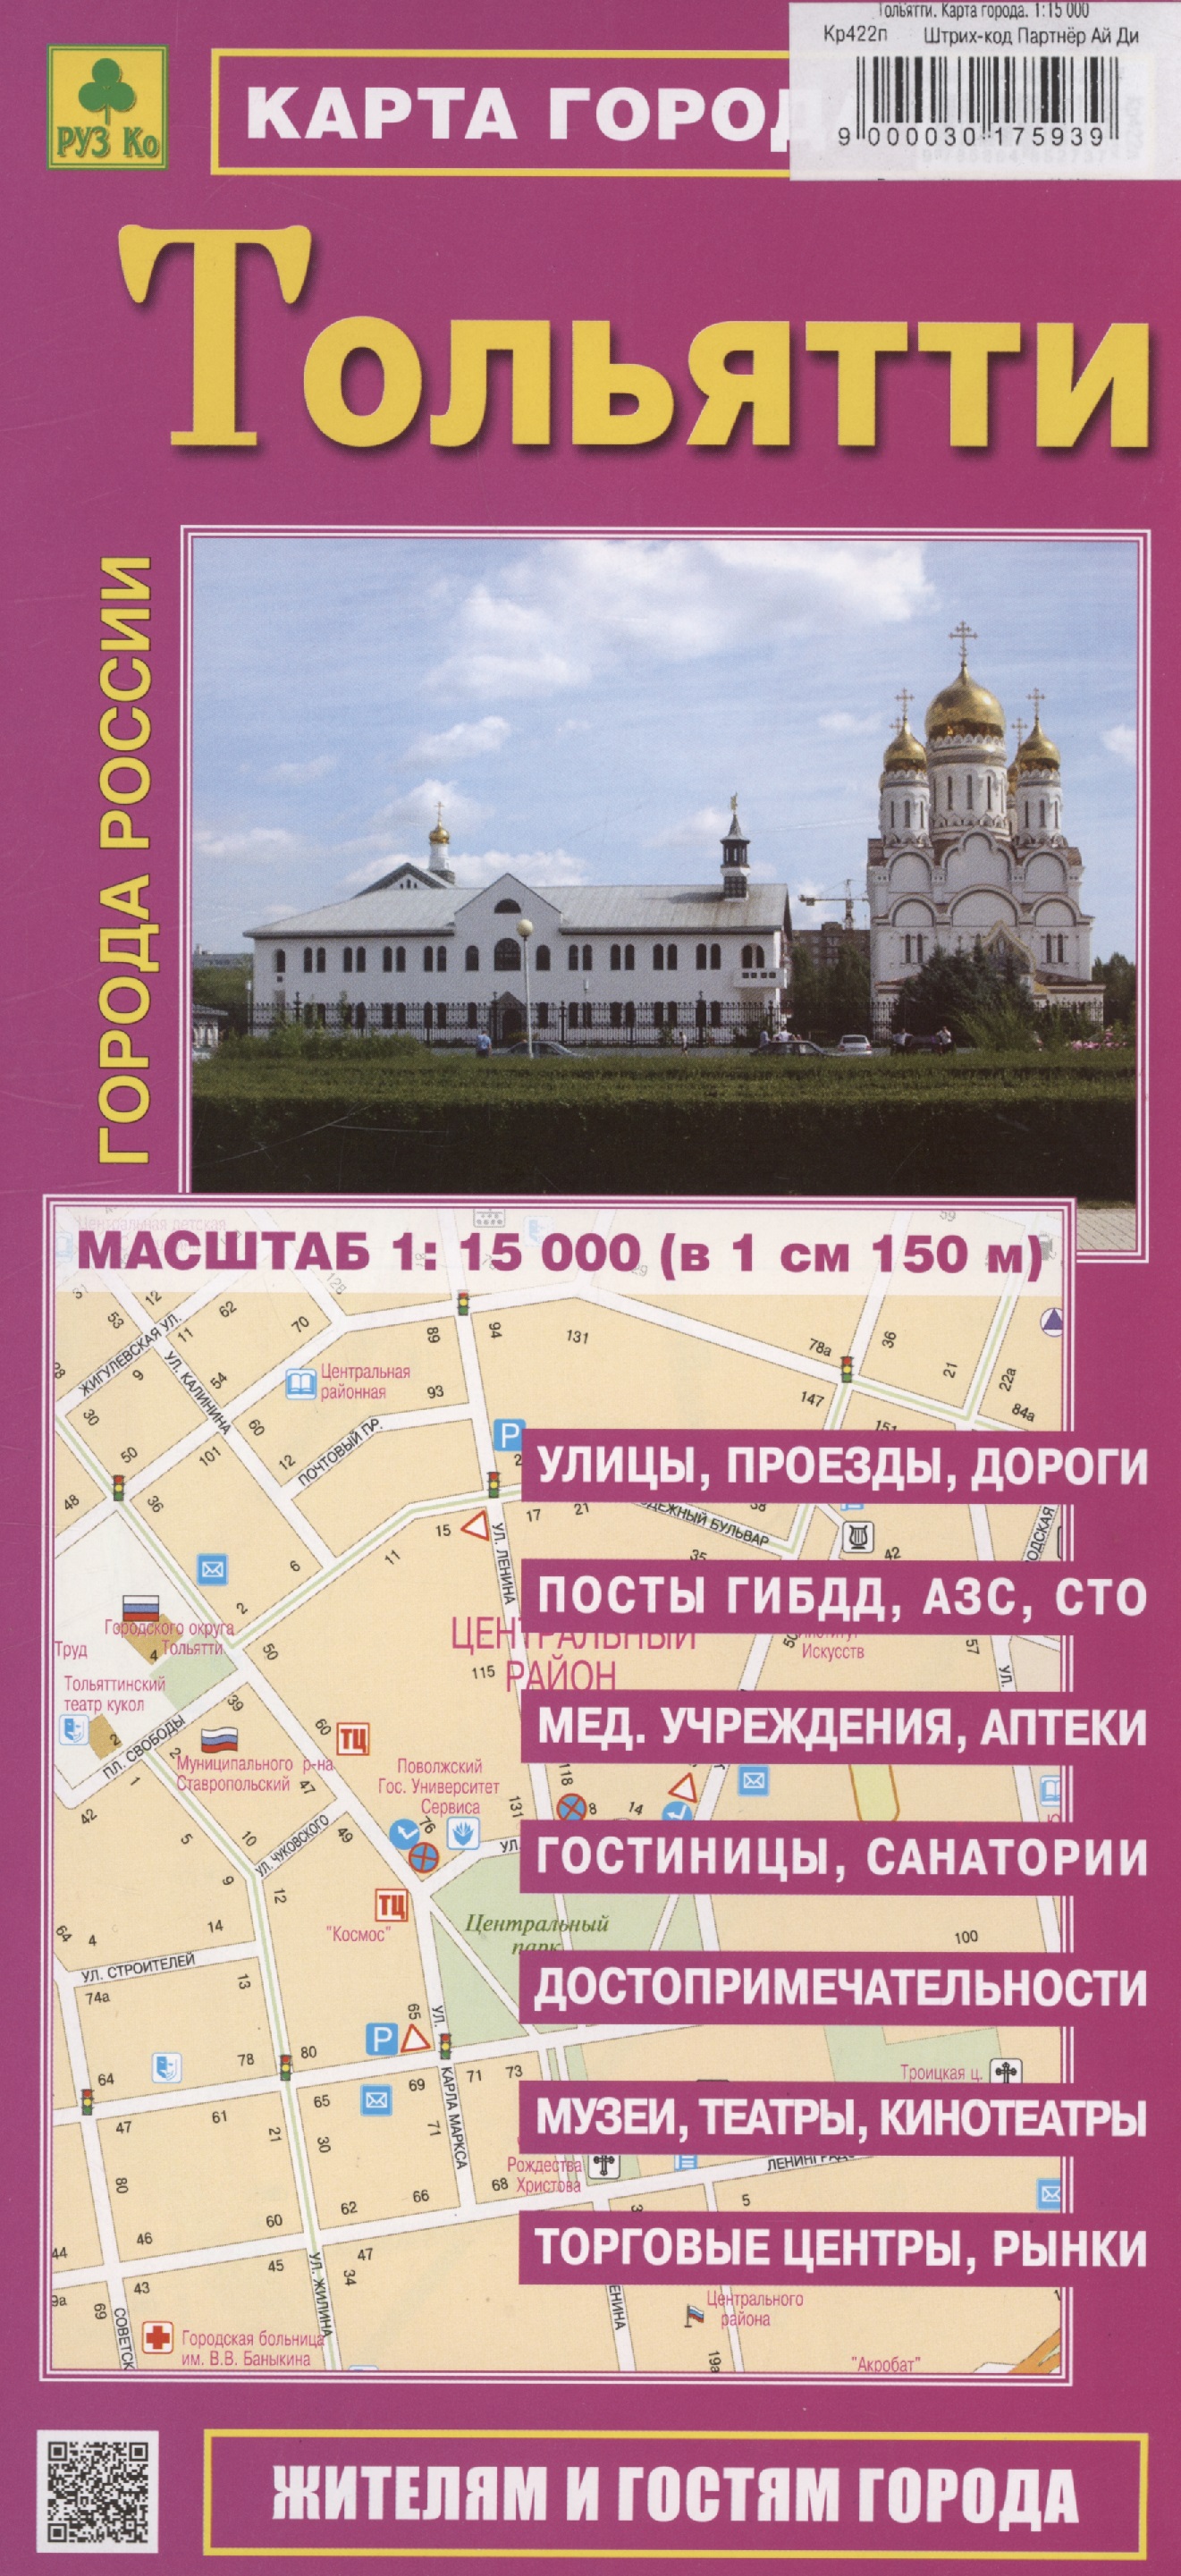 Тольятти. Карта города (М1:15 000)